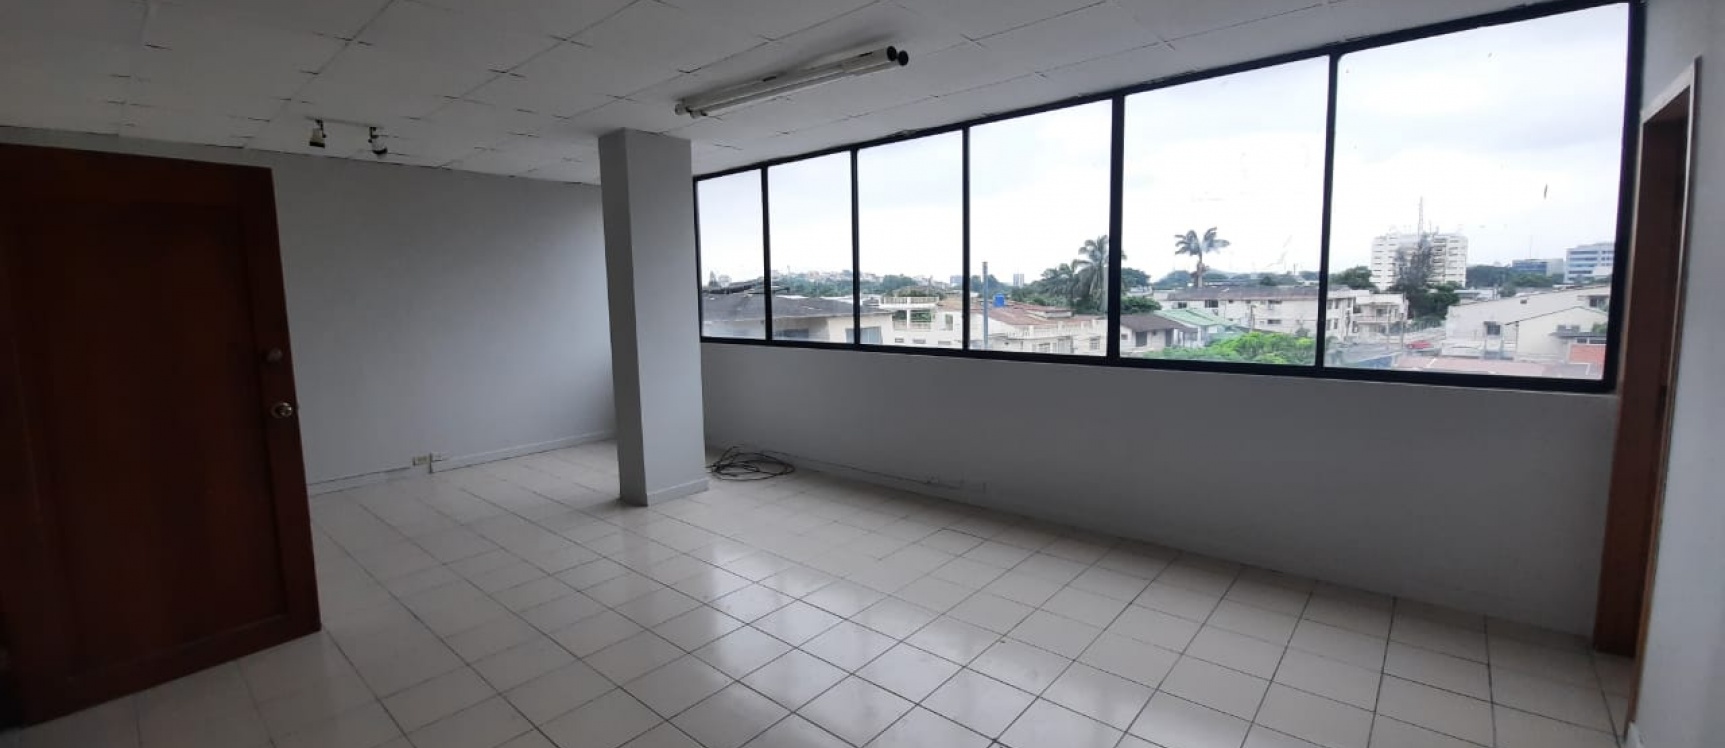 GeoBienes - Oficina en venta ubicada en Avenida Miraflores - Plusvalia Guayaquil Casas de venta y alquiler Inmobiliaria Ecuador